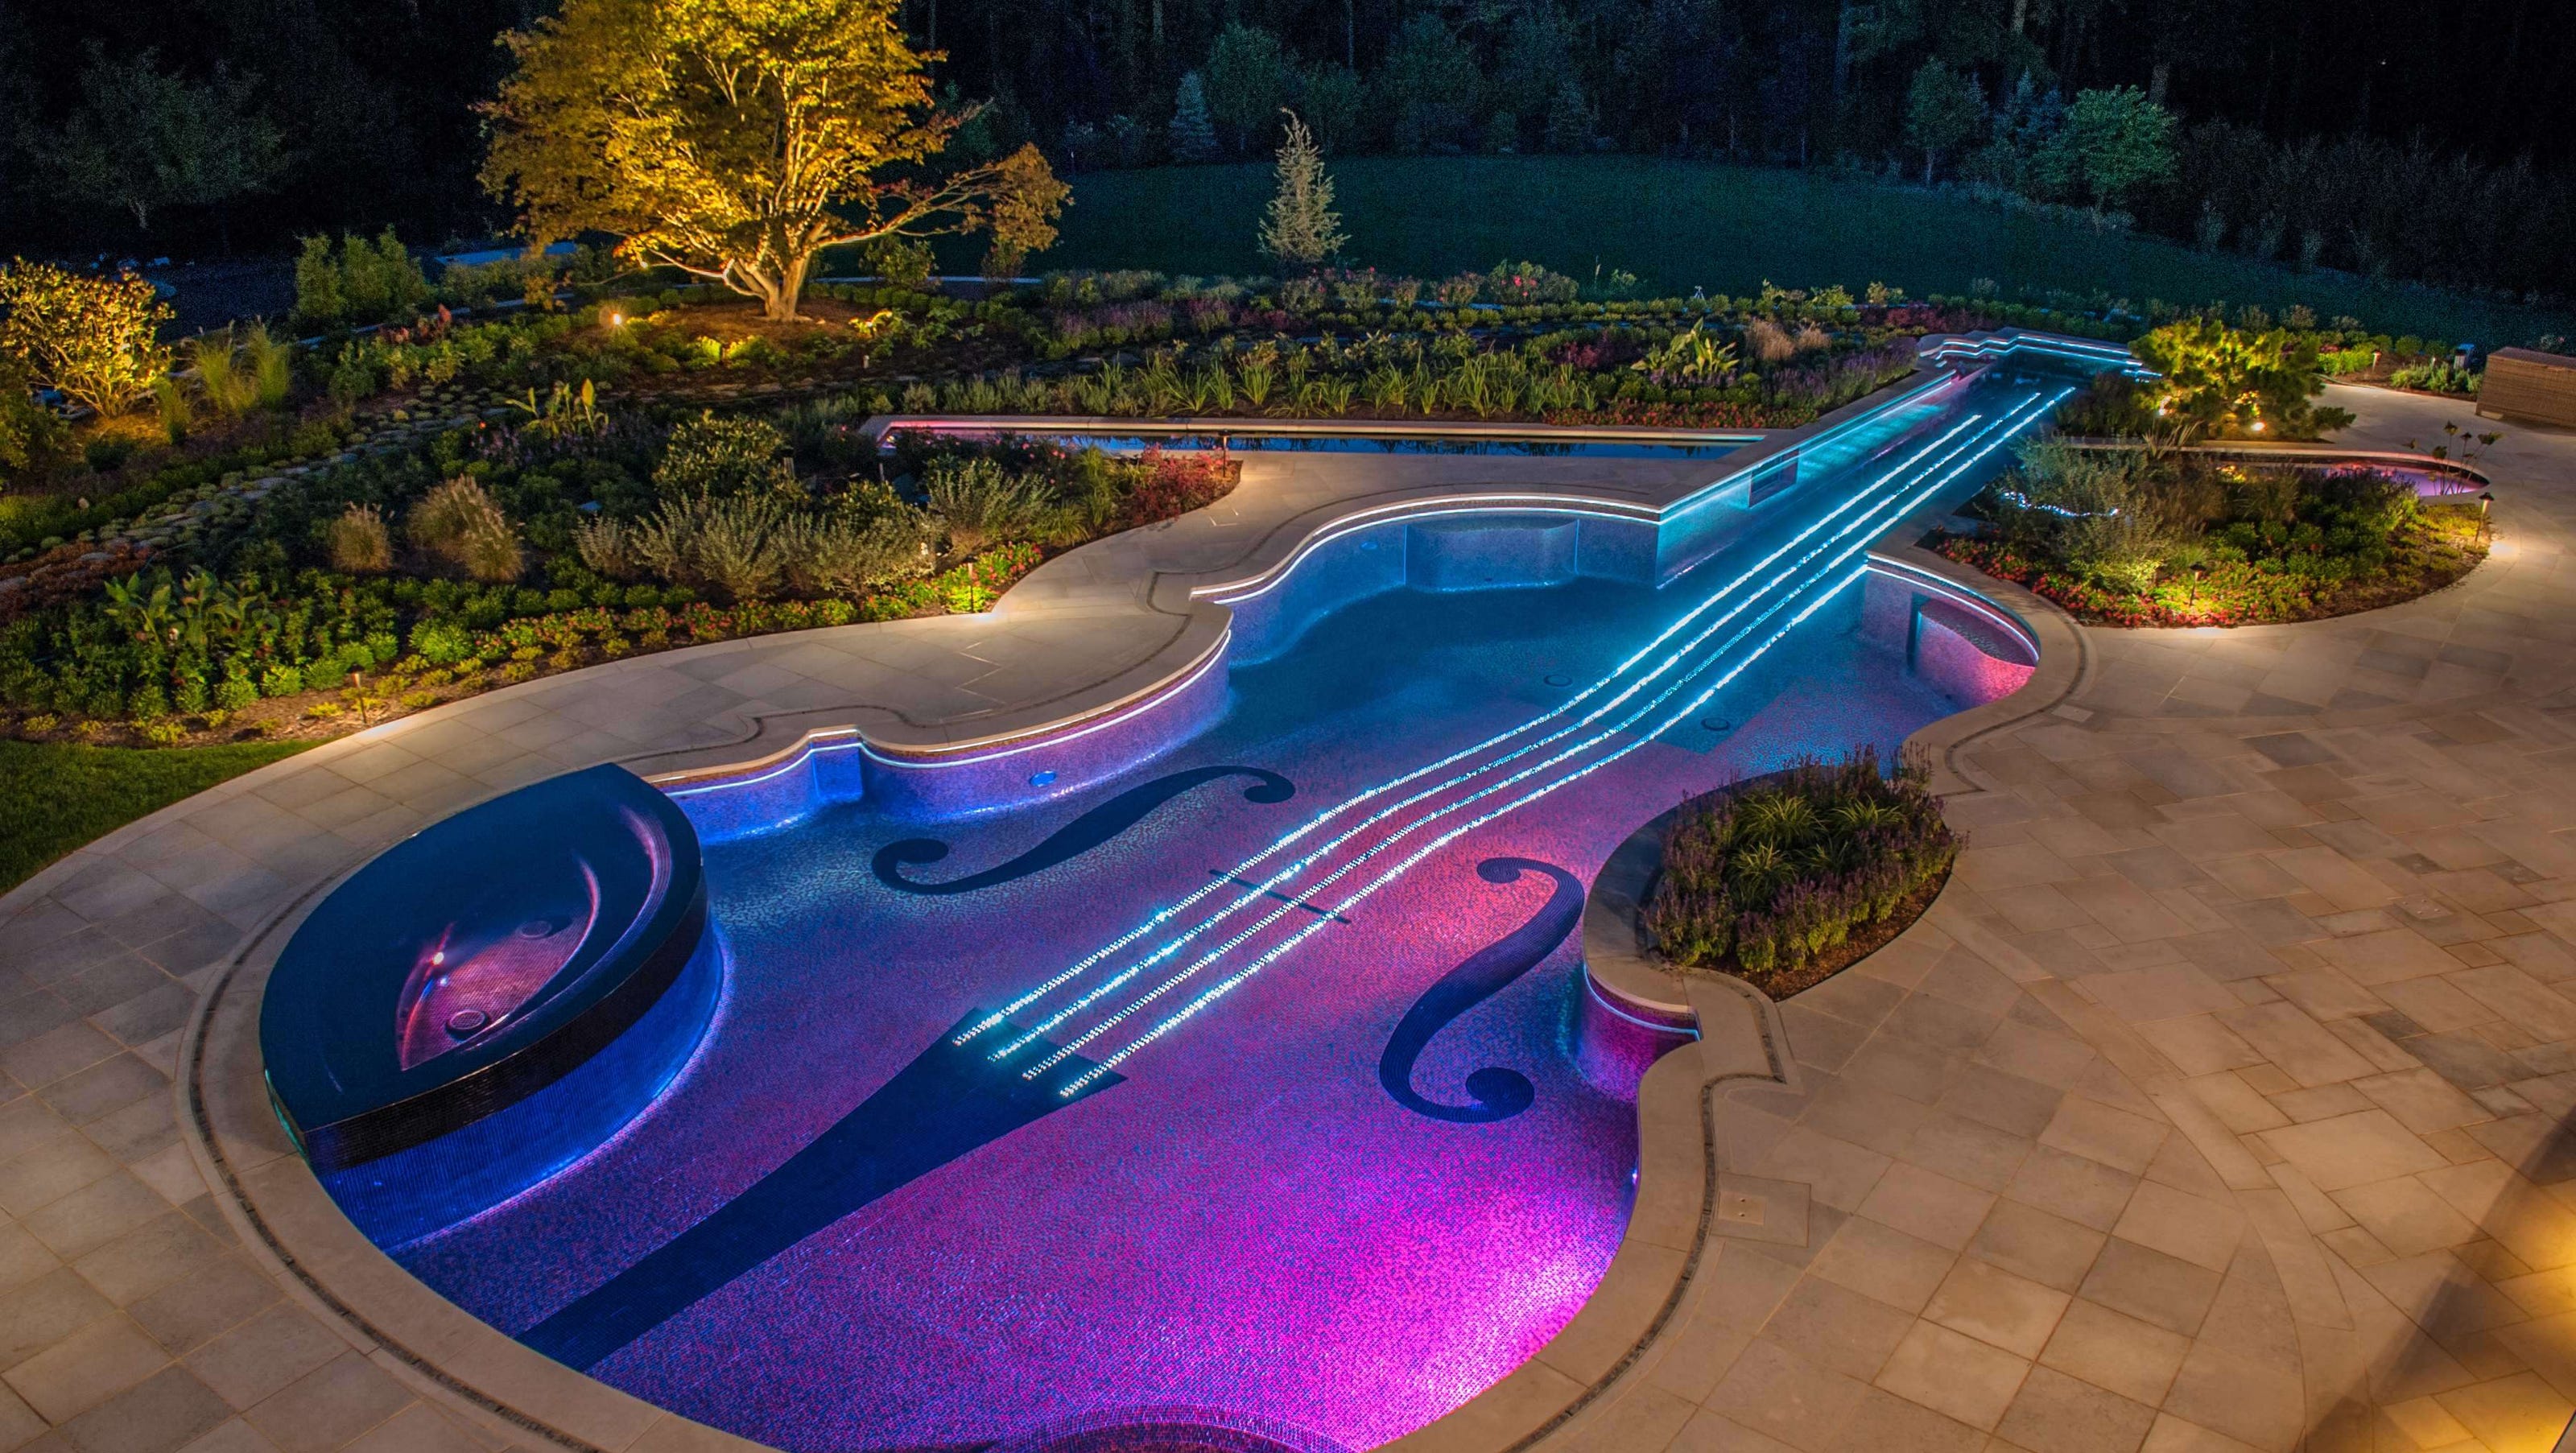 forsendelse Gør det tungt Hurtig In the lap of luxury: A $1.5 million violin pool